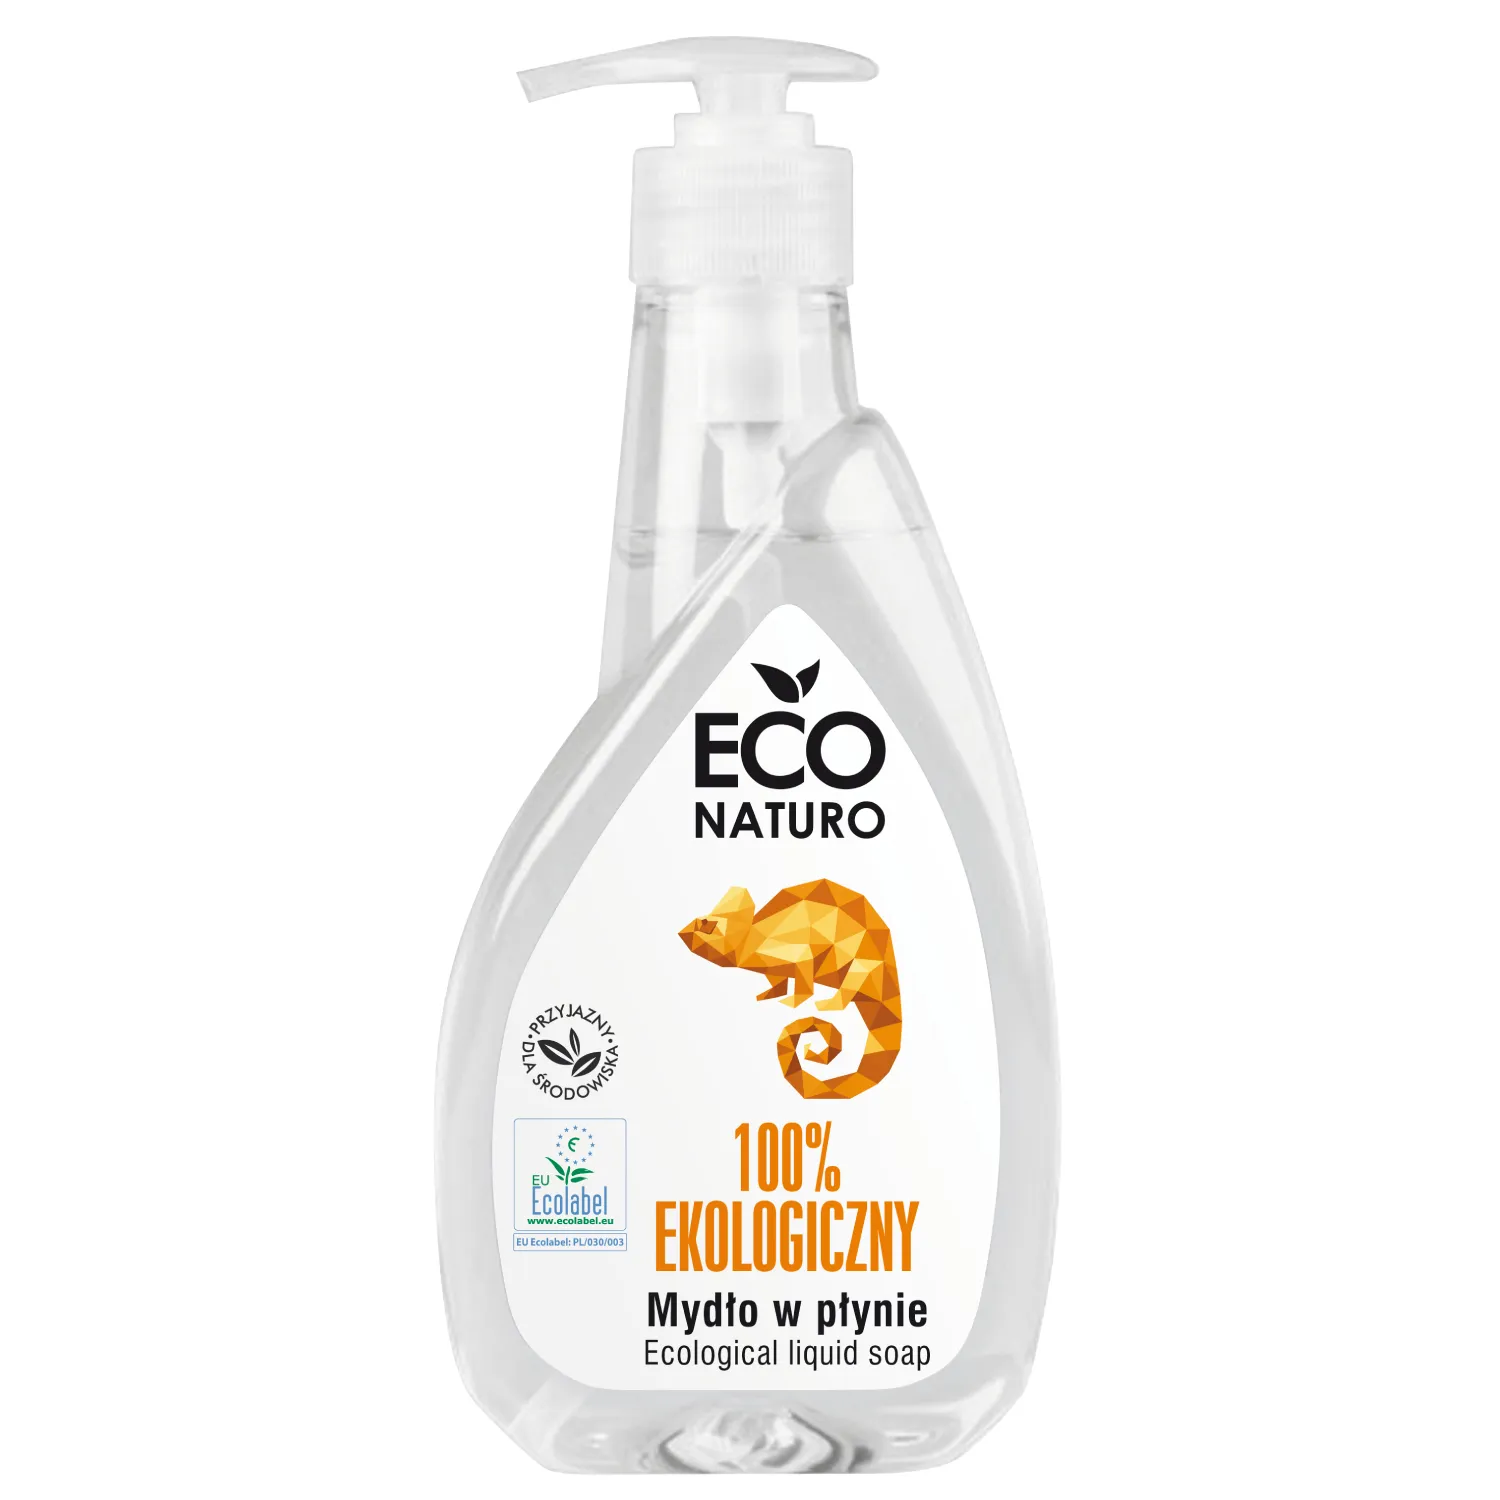 Eco Naturo mydło w płynie, 400 ml